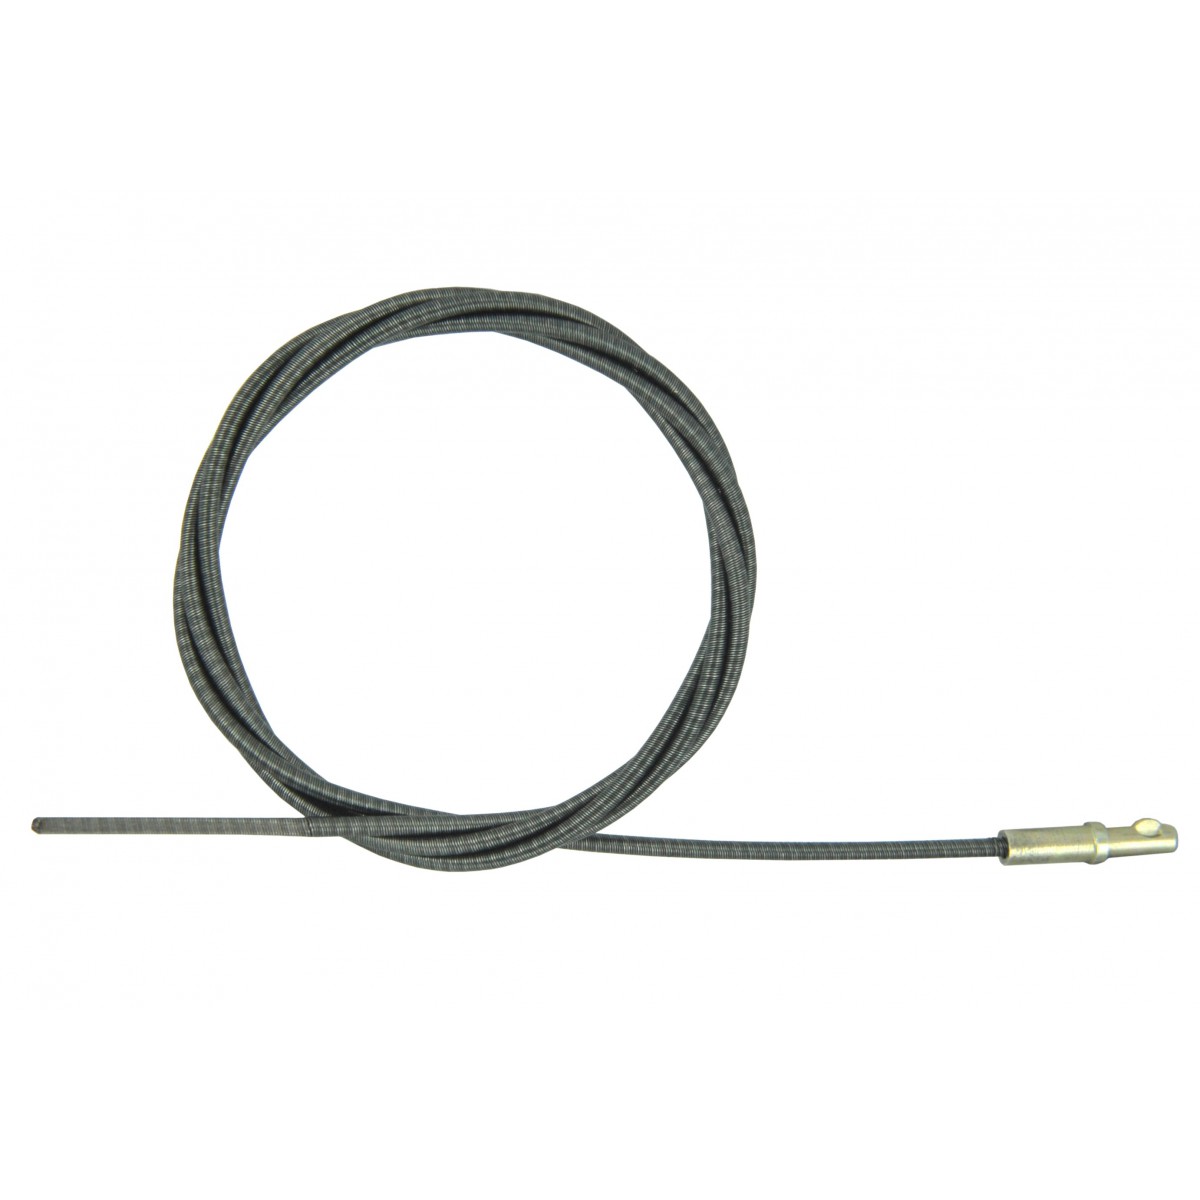 Cable de tacómetro de 1200 mm Tacómetro Iseki sin armadura, inserto de cable